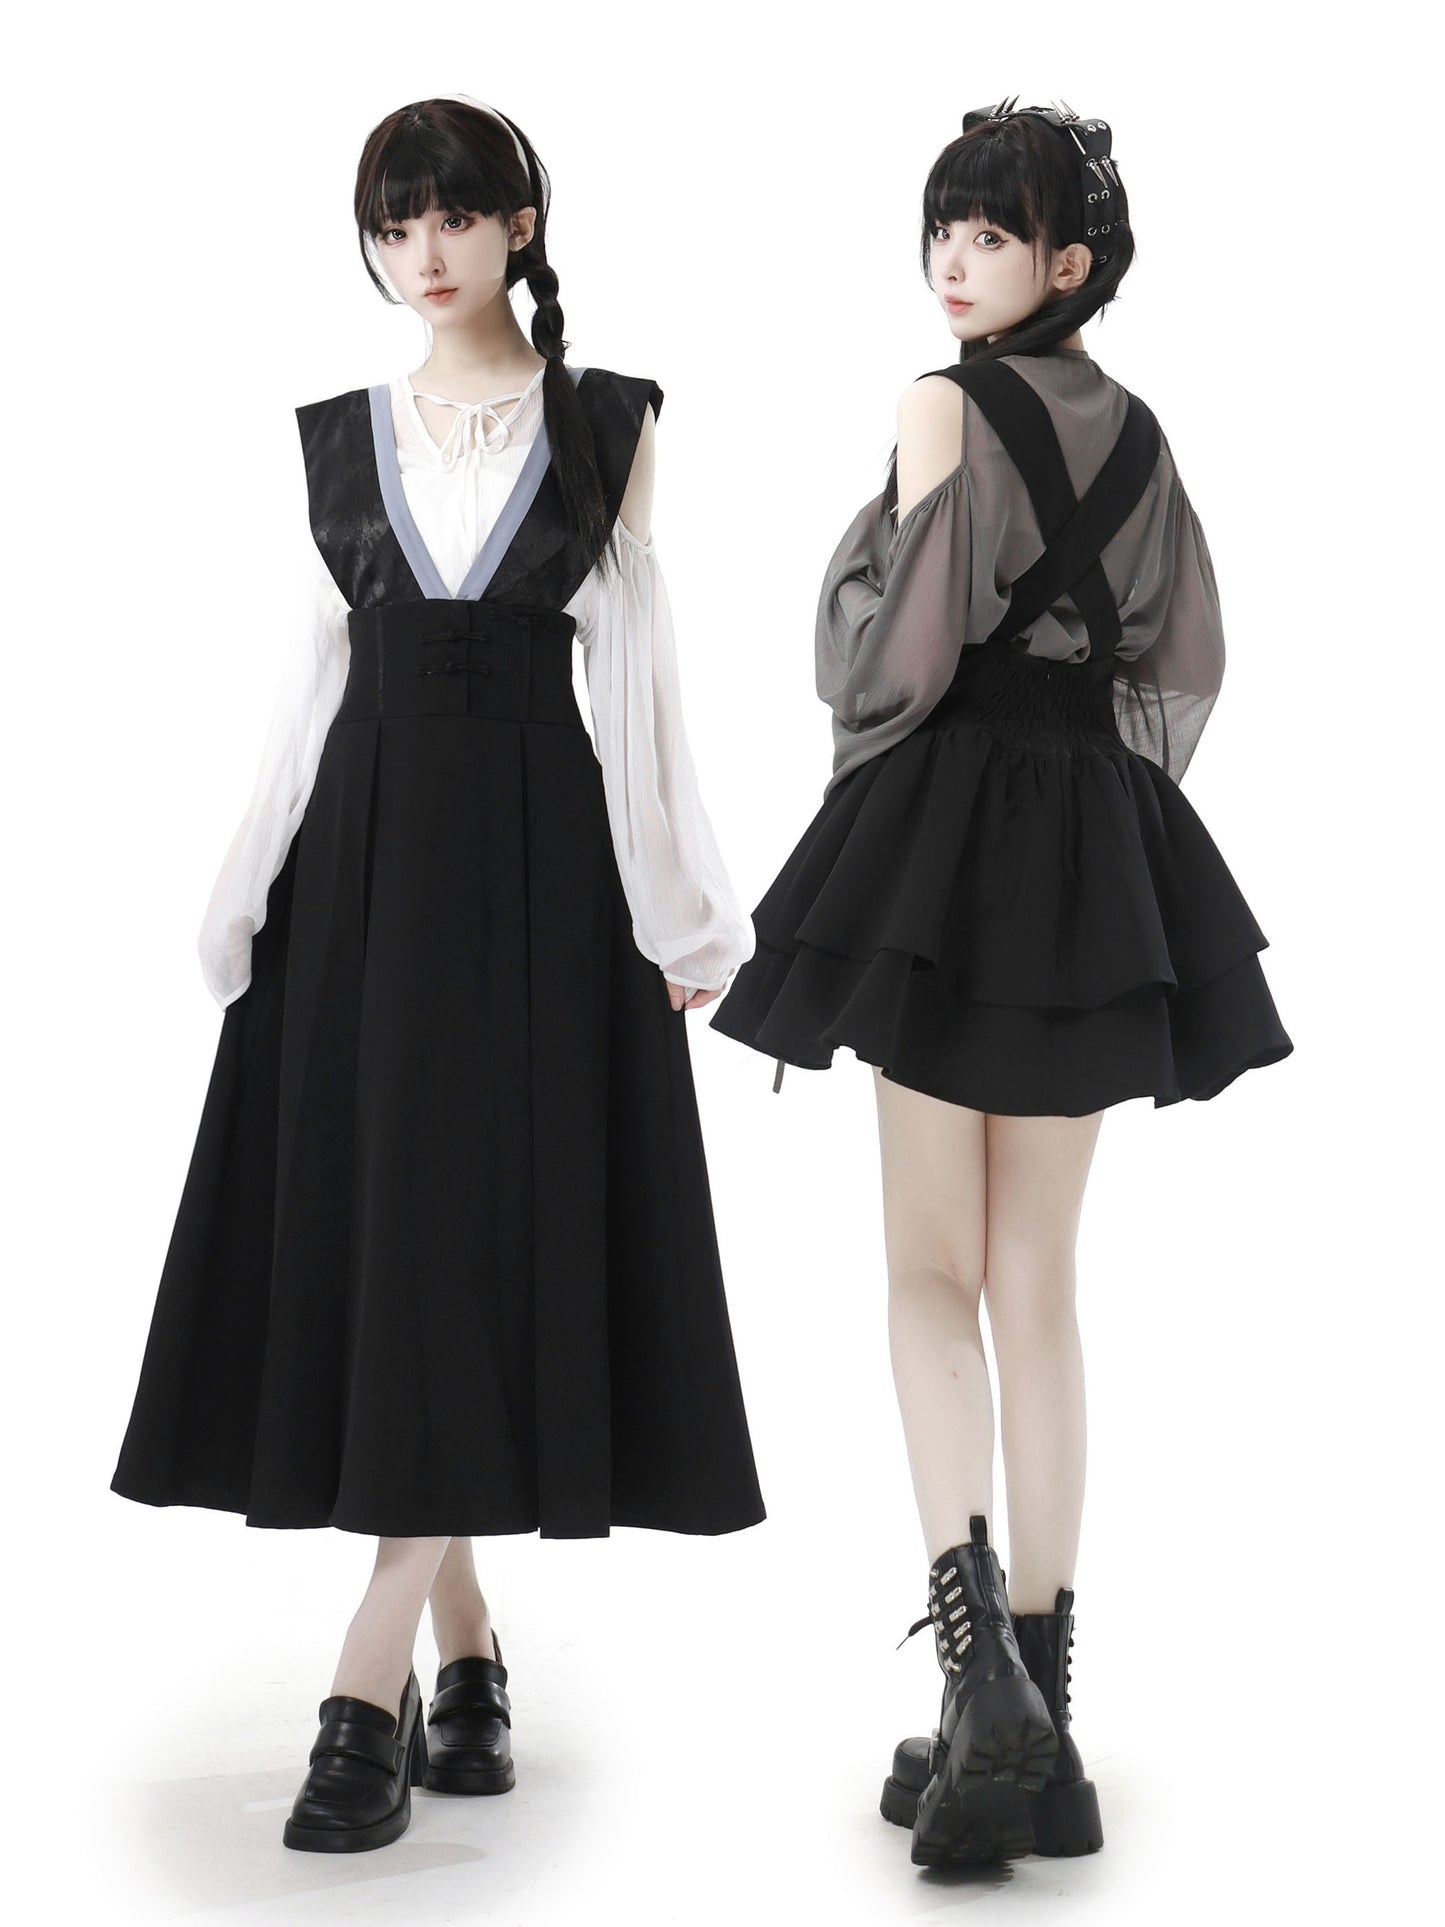 China Off-Shoulder Top + Long Suspender Skirt + Short Skirt